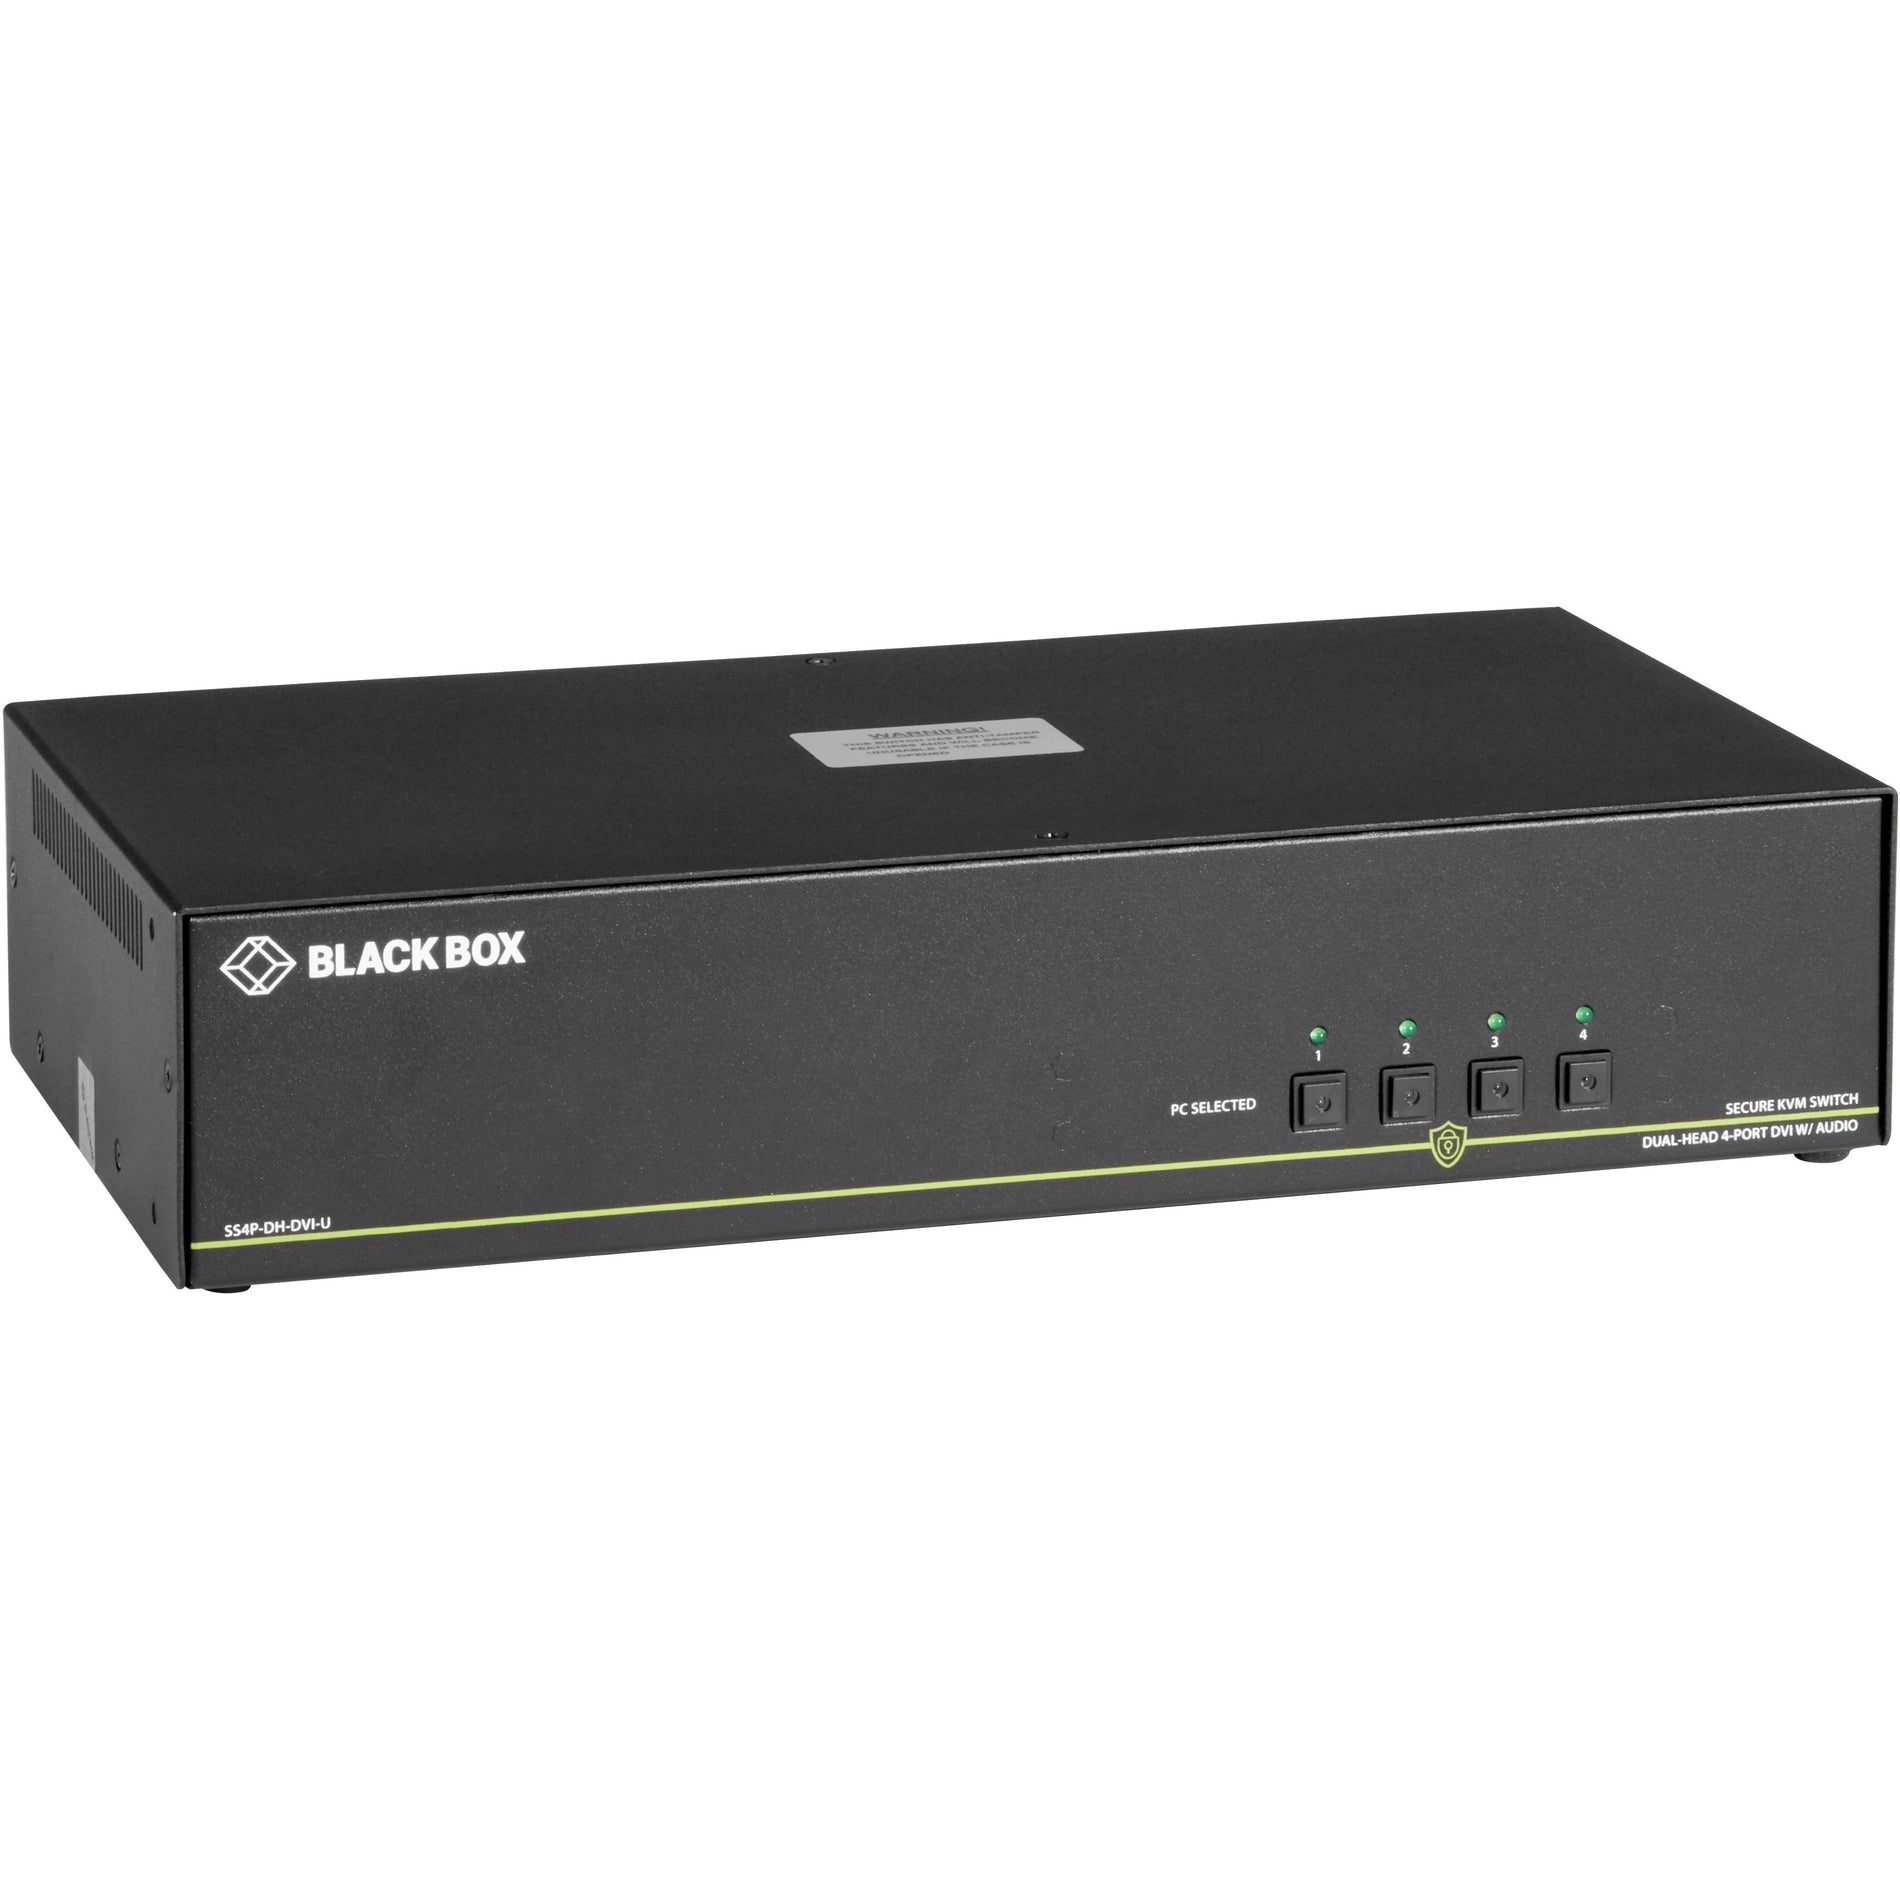 Black Box SS4P-DH-DVI-U NIAP 3.0 Secure 4-Port Dual-Head DVI-I KVM Switch, 3840 x 2160 Resolution, TAA Compliant, 3 Year Warranty